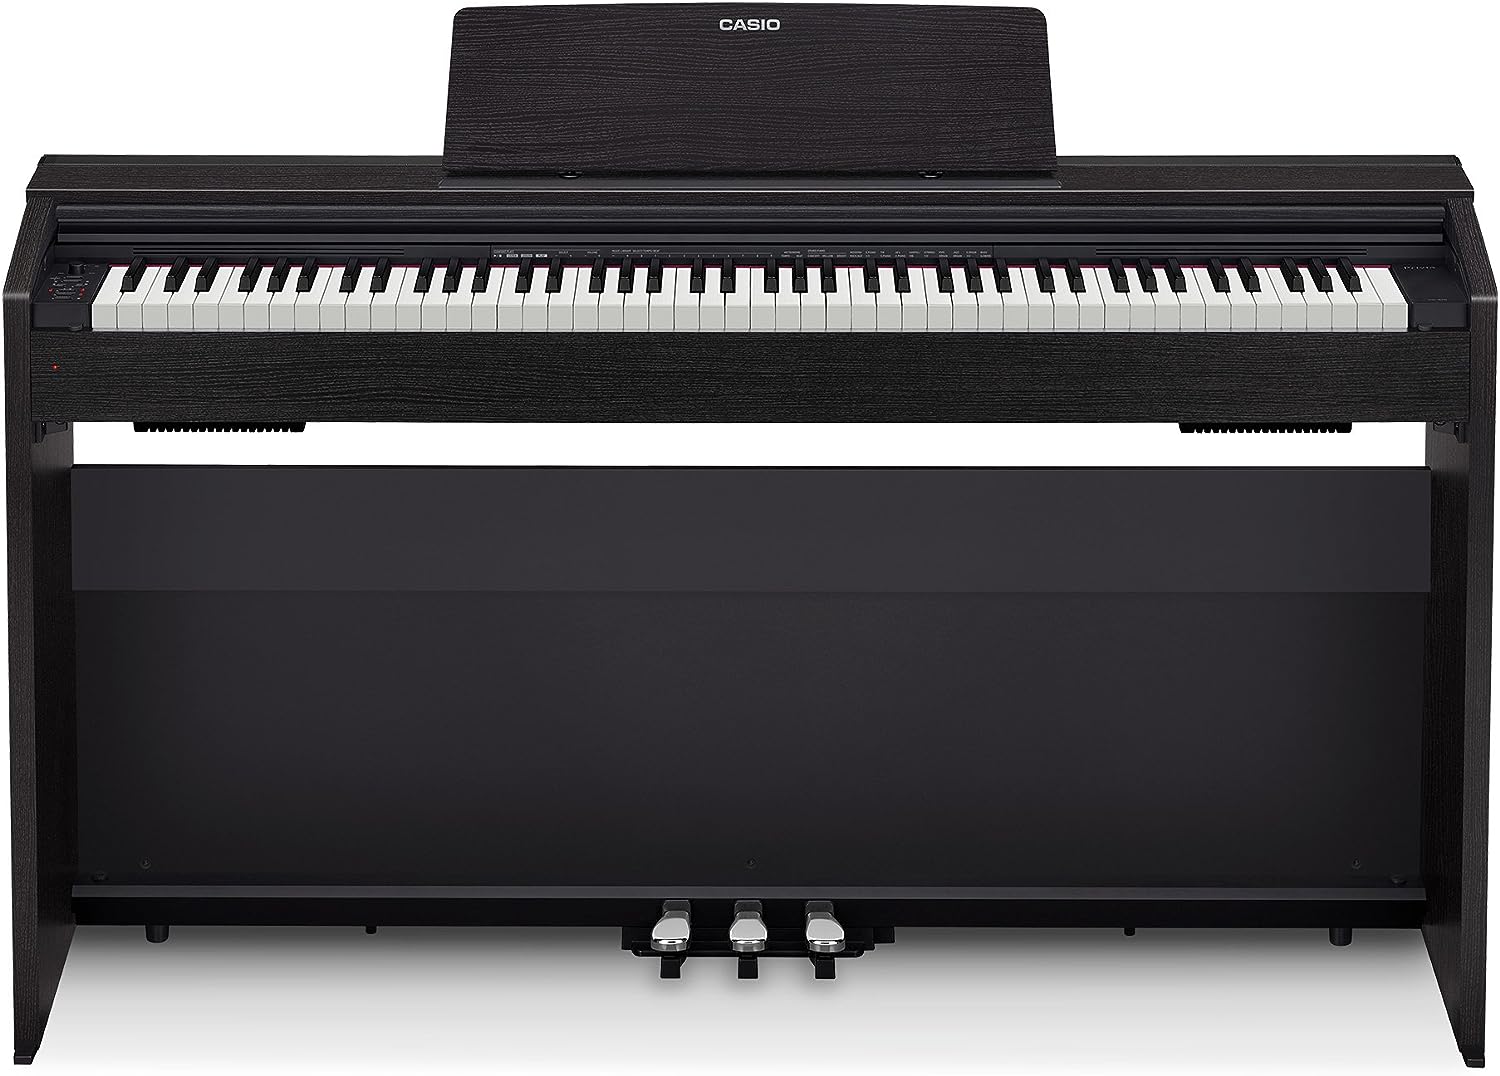 Обзор цифрового пианино Casio Privia PX-870